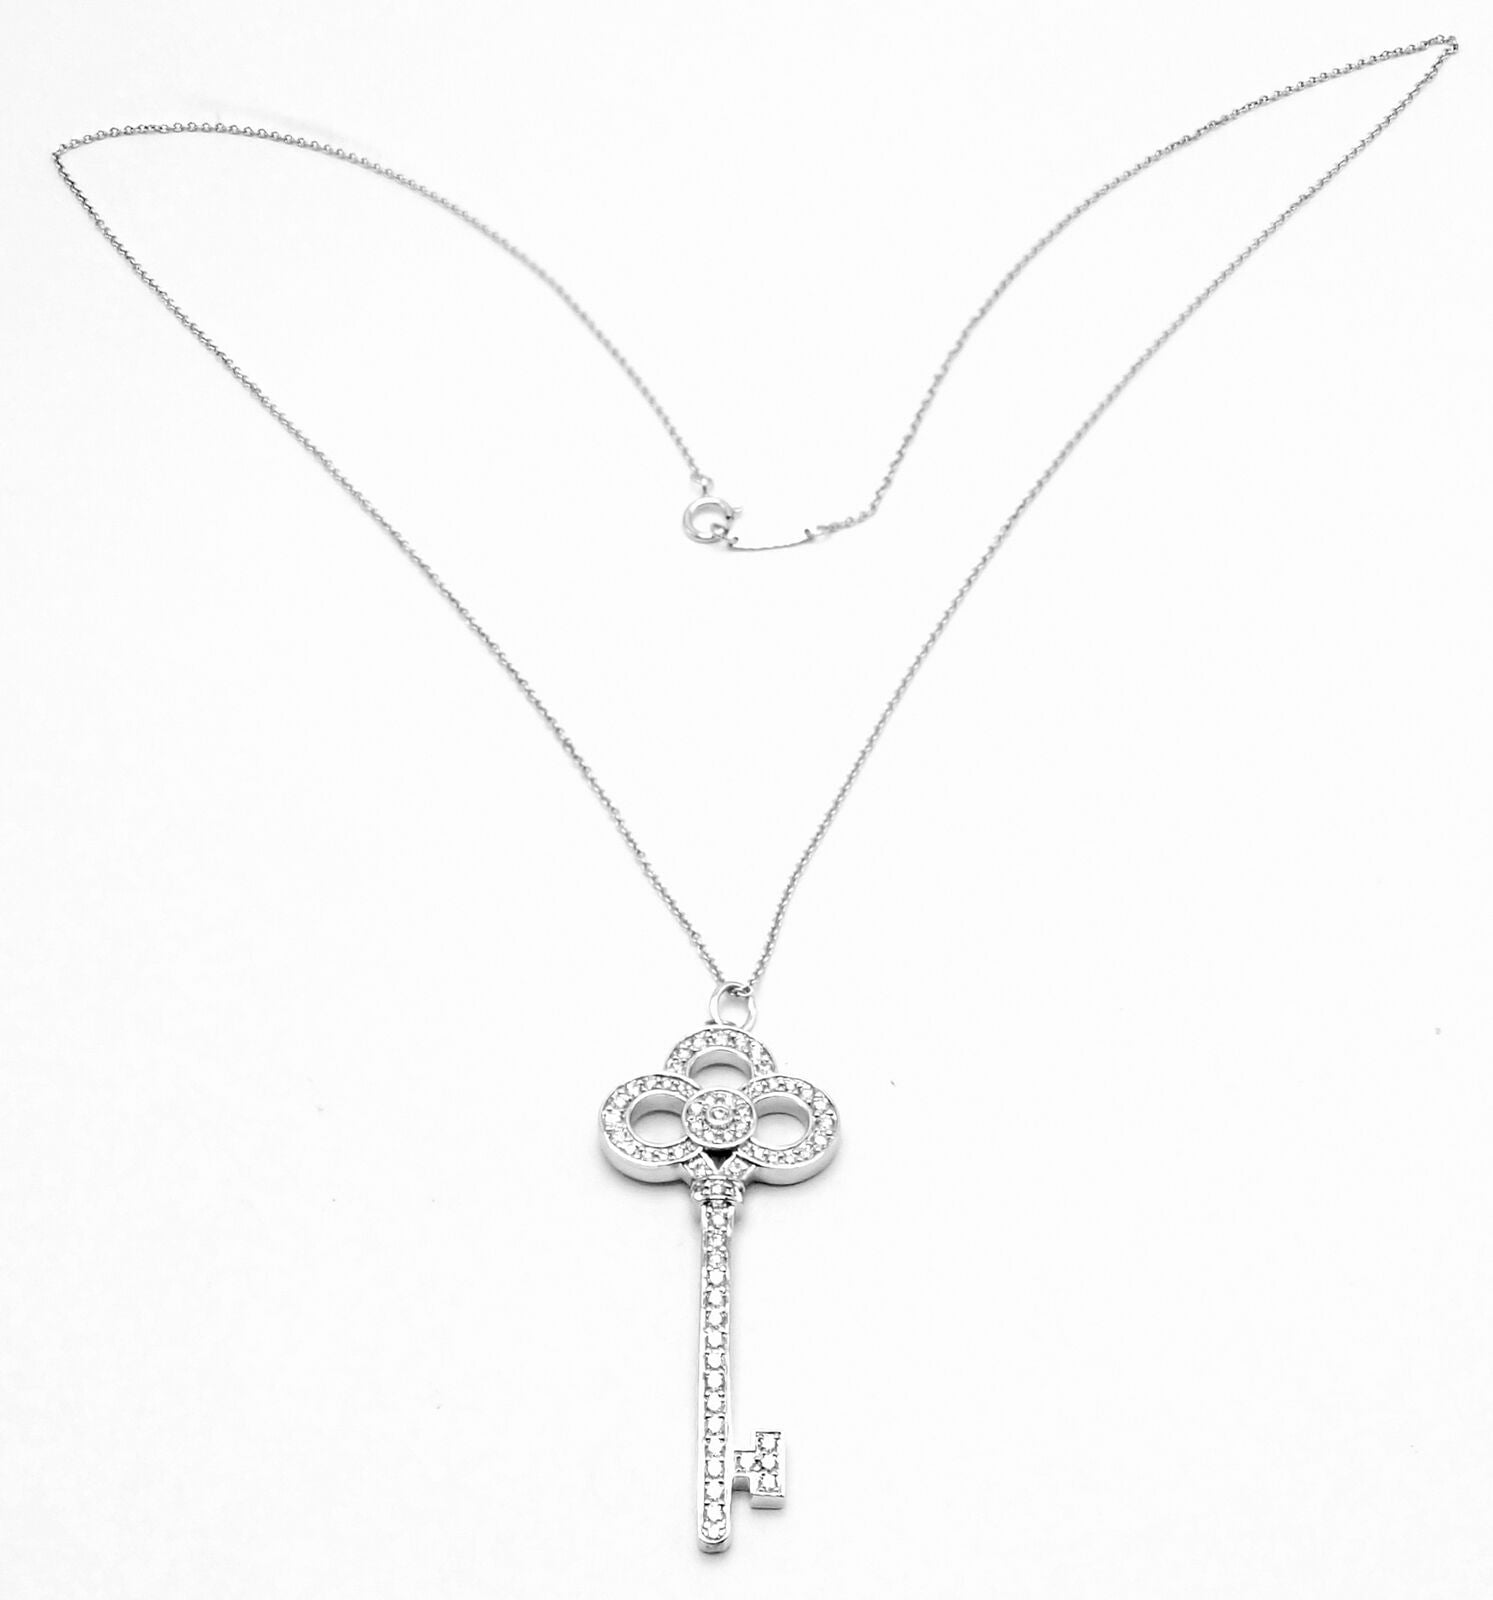 Tiffany & Co. Large Key Necklace